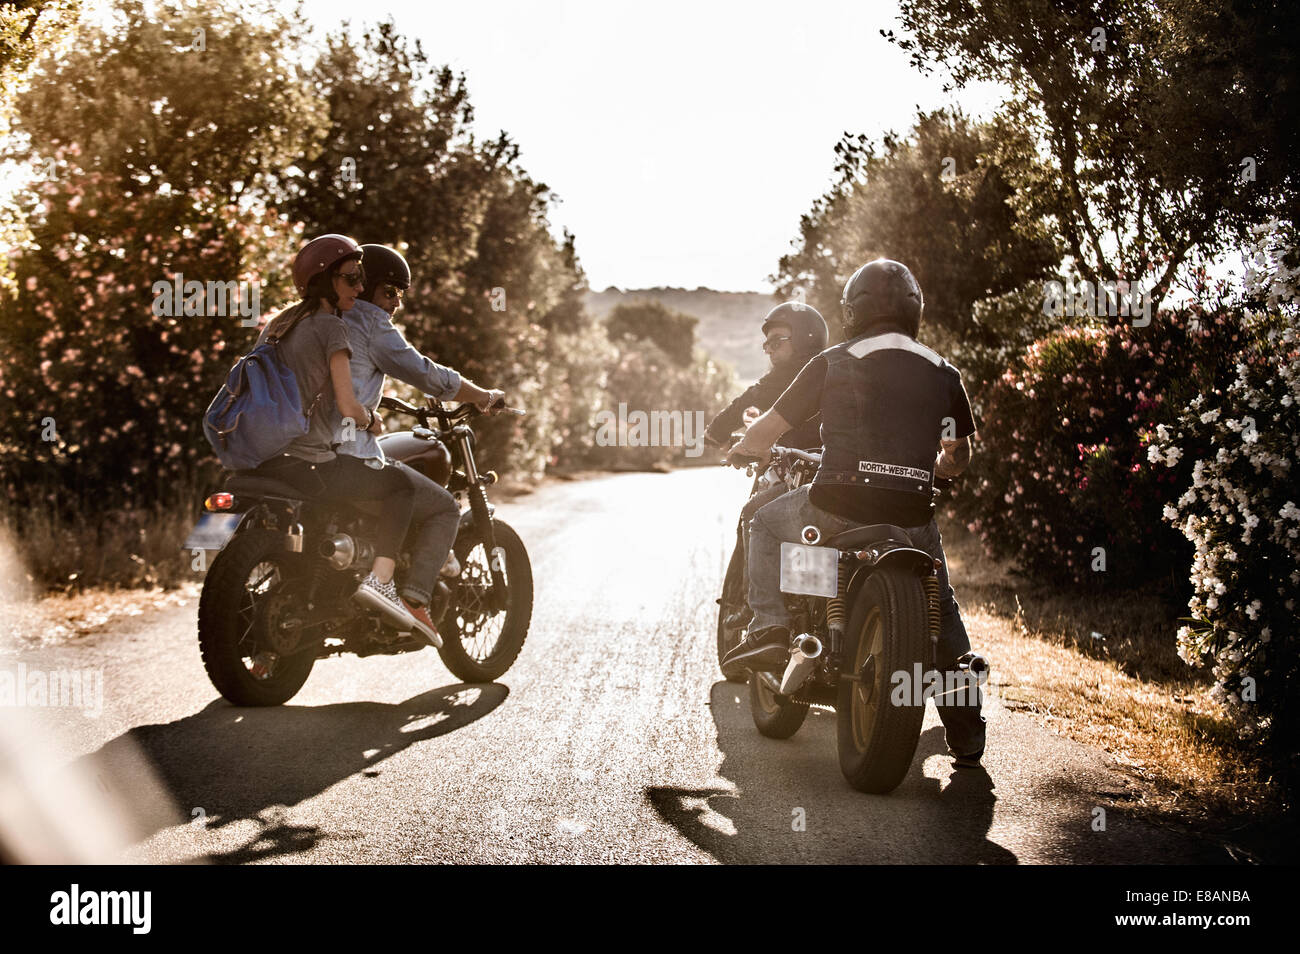 Vista posteriore di quattro amici su motocicli chattare su strada rurale, Cagliari, Sardegna, Italia Foto Stock